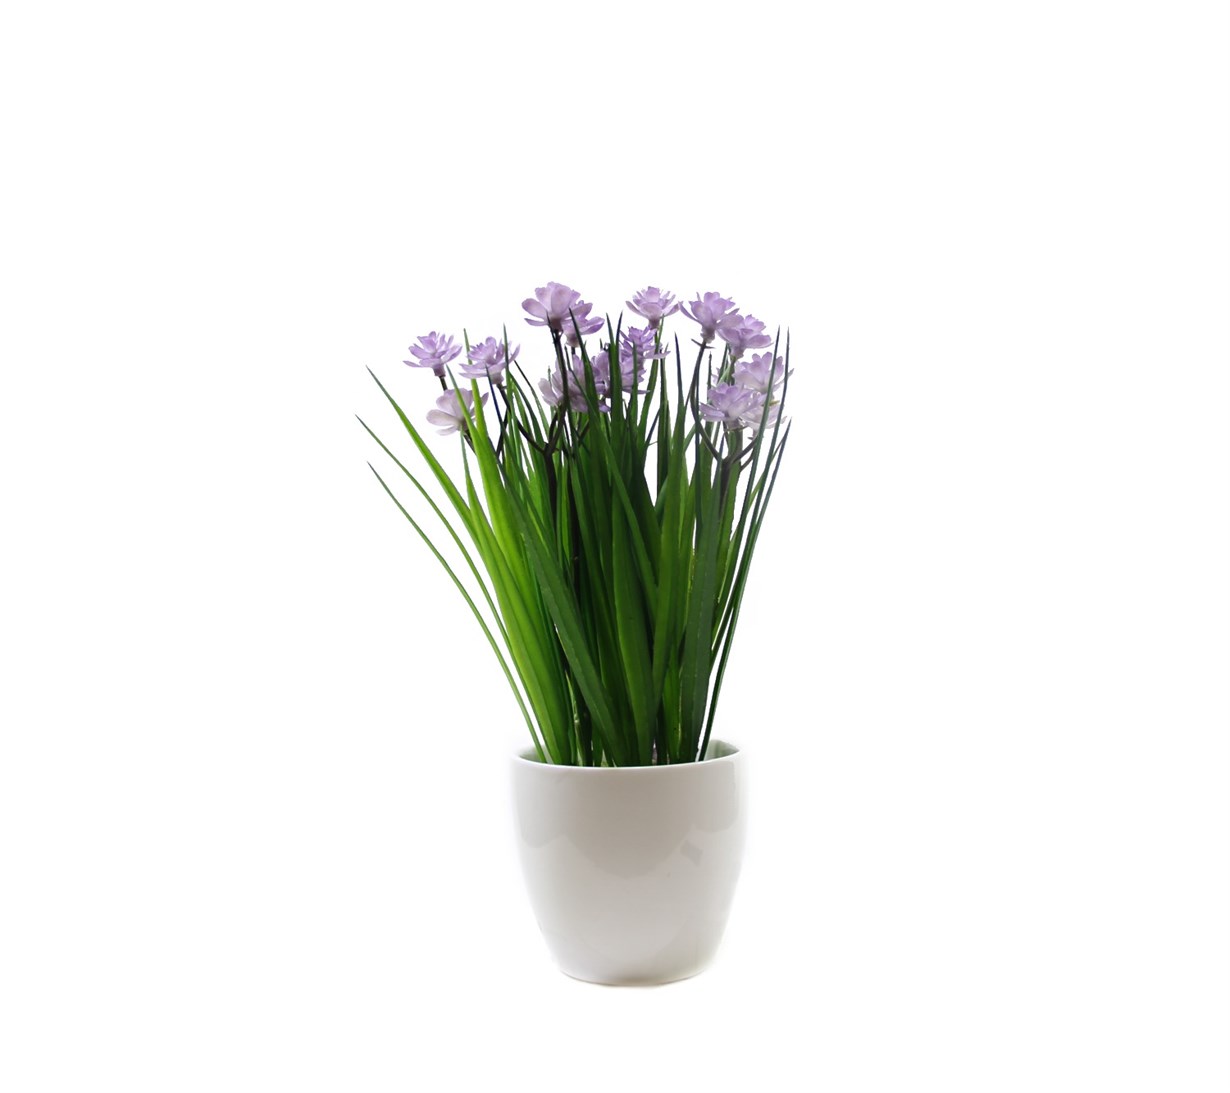 Yapay Mor Çiçekli Pot | Yapay Saksı Çiçekleri 26,25 TL